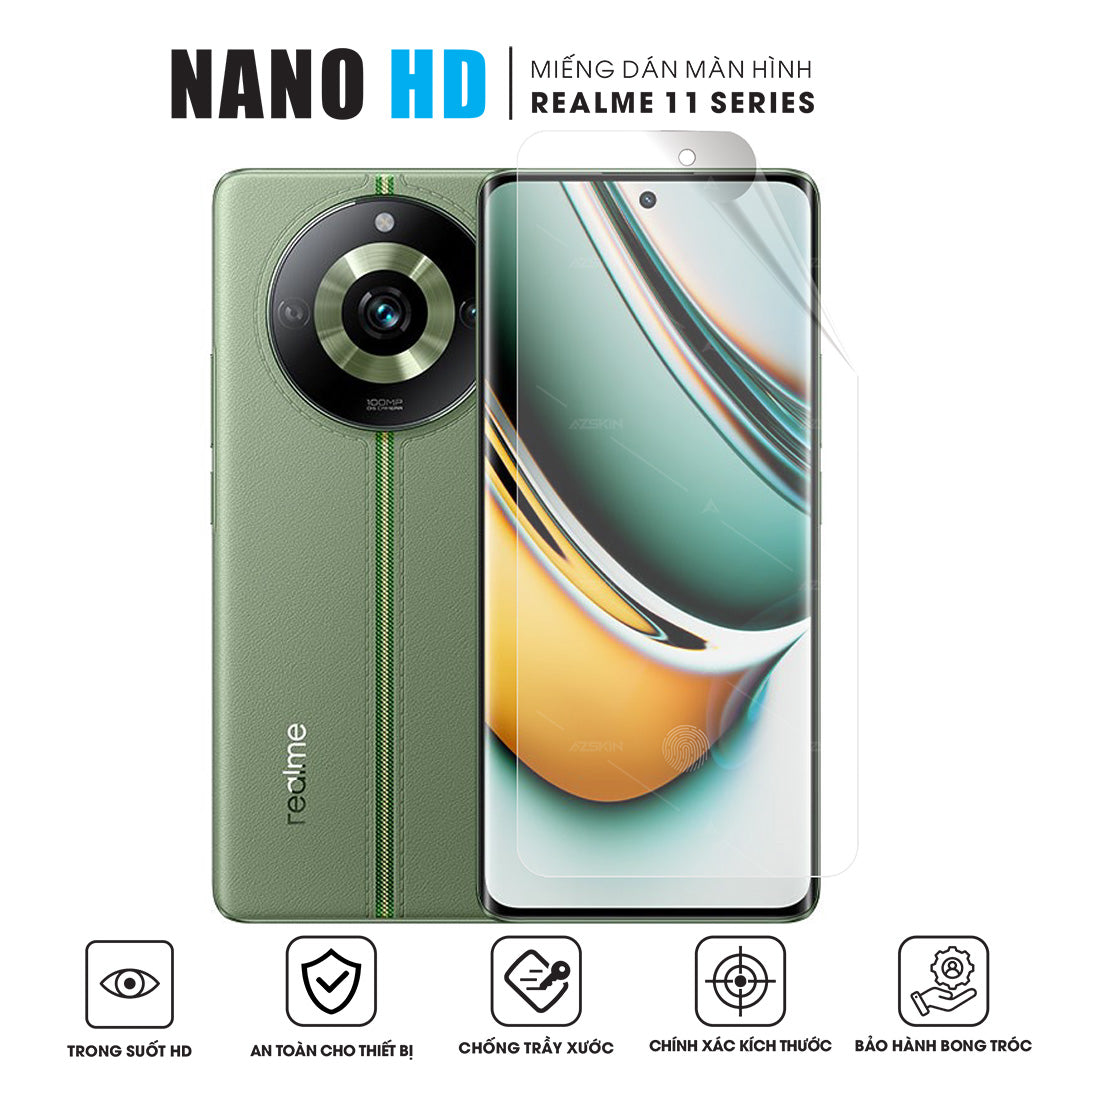 Miếng dán màn hình Nano HD Realme 11 | Pro | Pro+